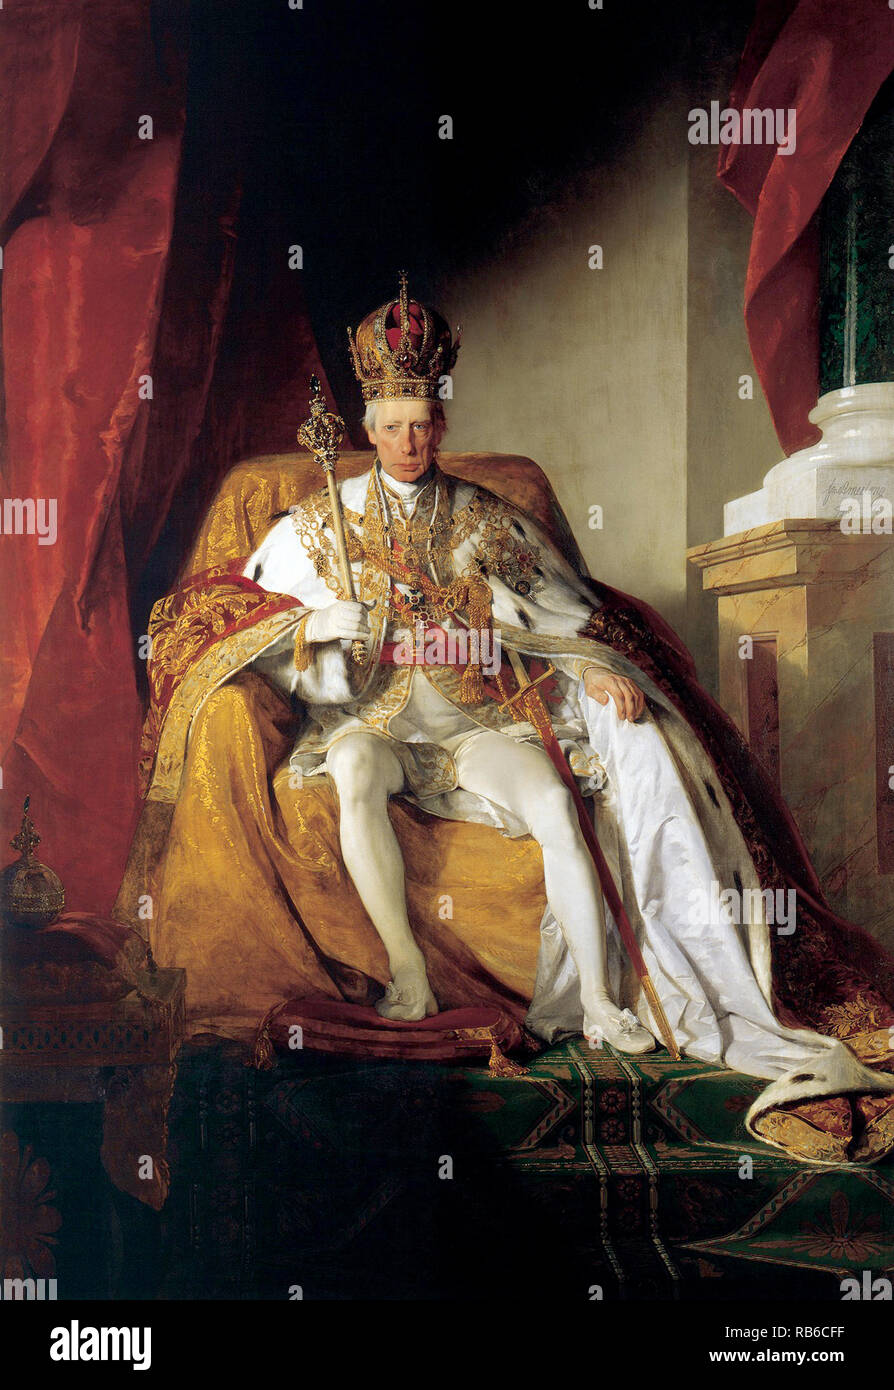 François II, Saint Empereur romain (1768 - 1835) le dernier empereur romain saint, décision de 1792 jusqu'en 1806, quand il a dissout le Saint Empire romain de la nation allemande Banque D'Images